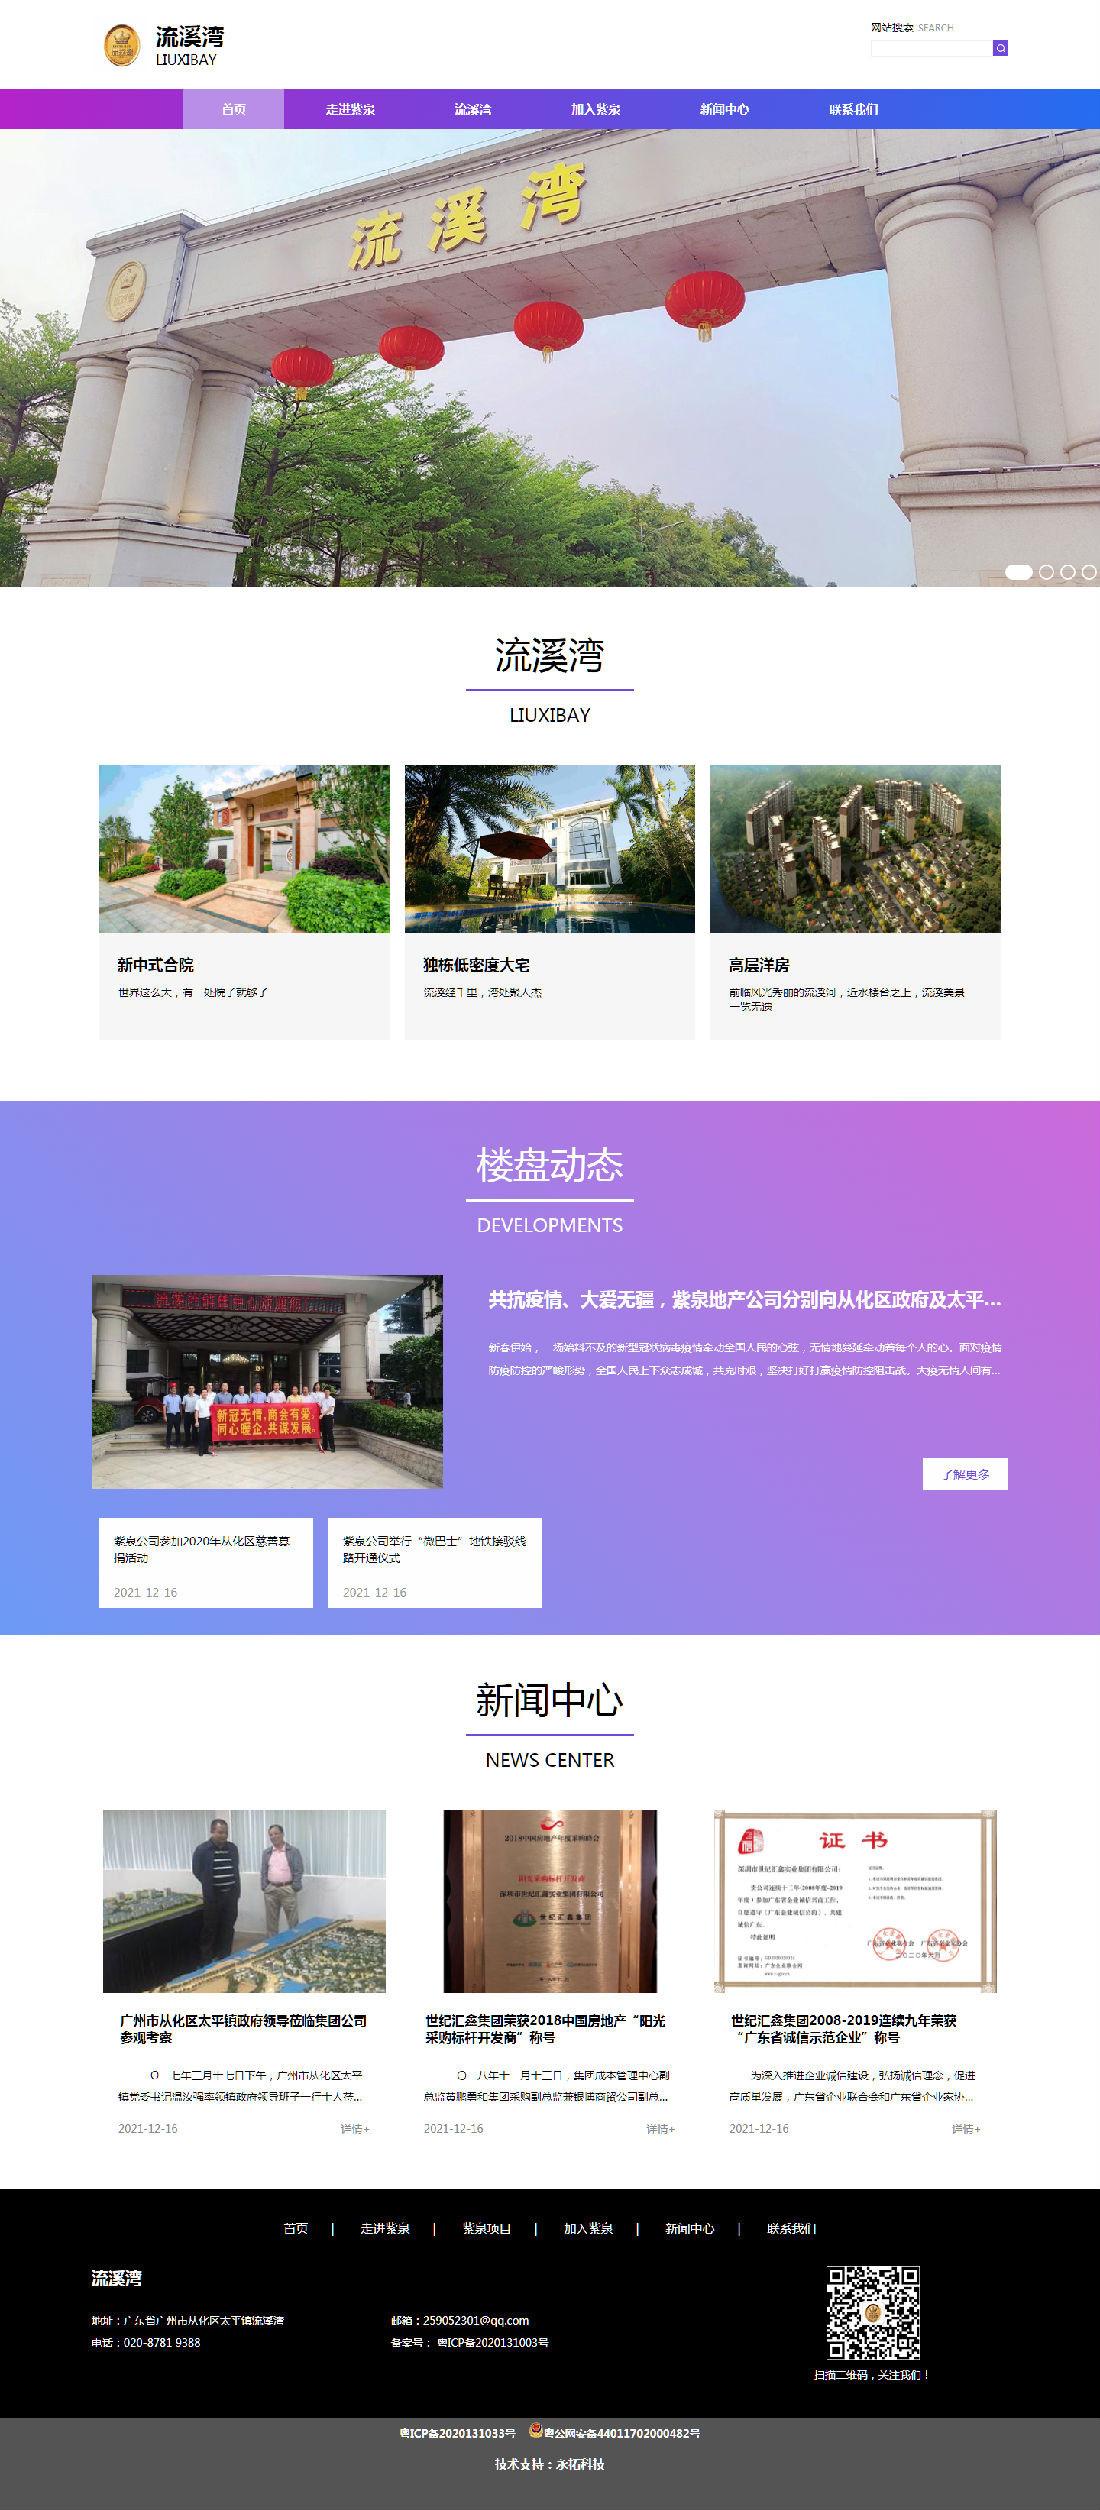 广州紫泉房地产开发有限公司